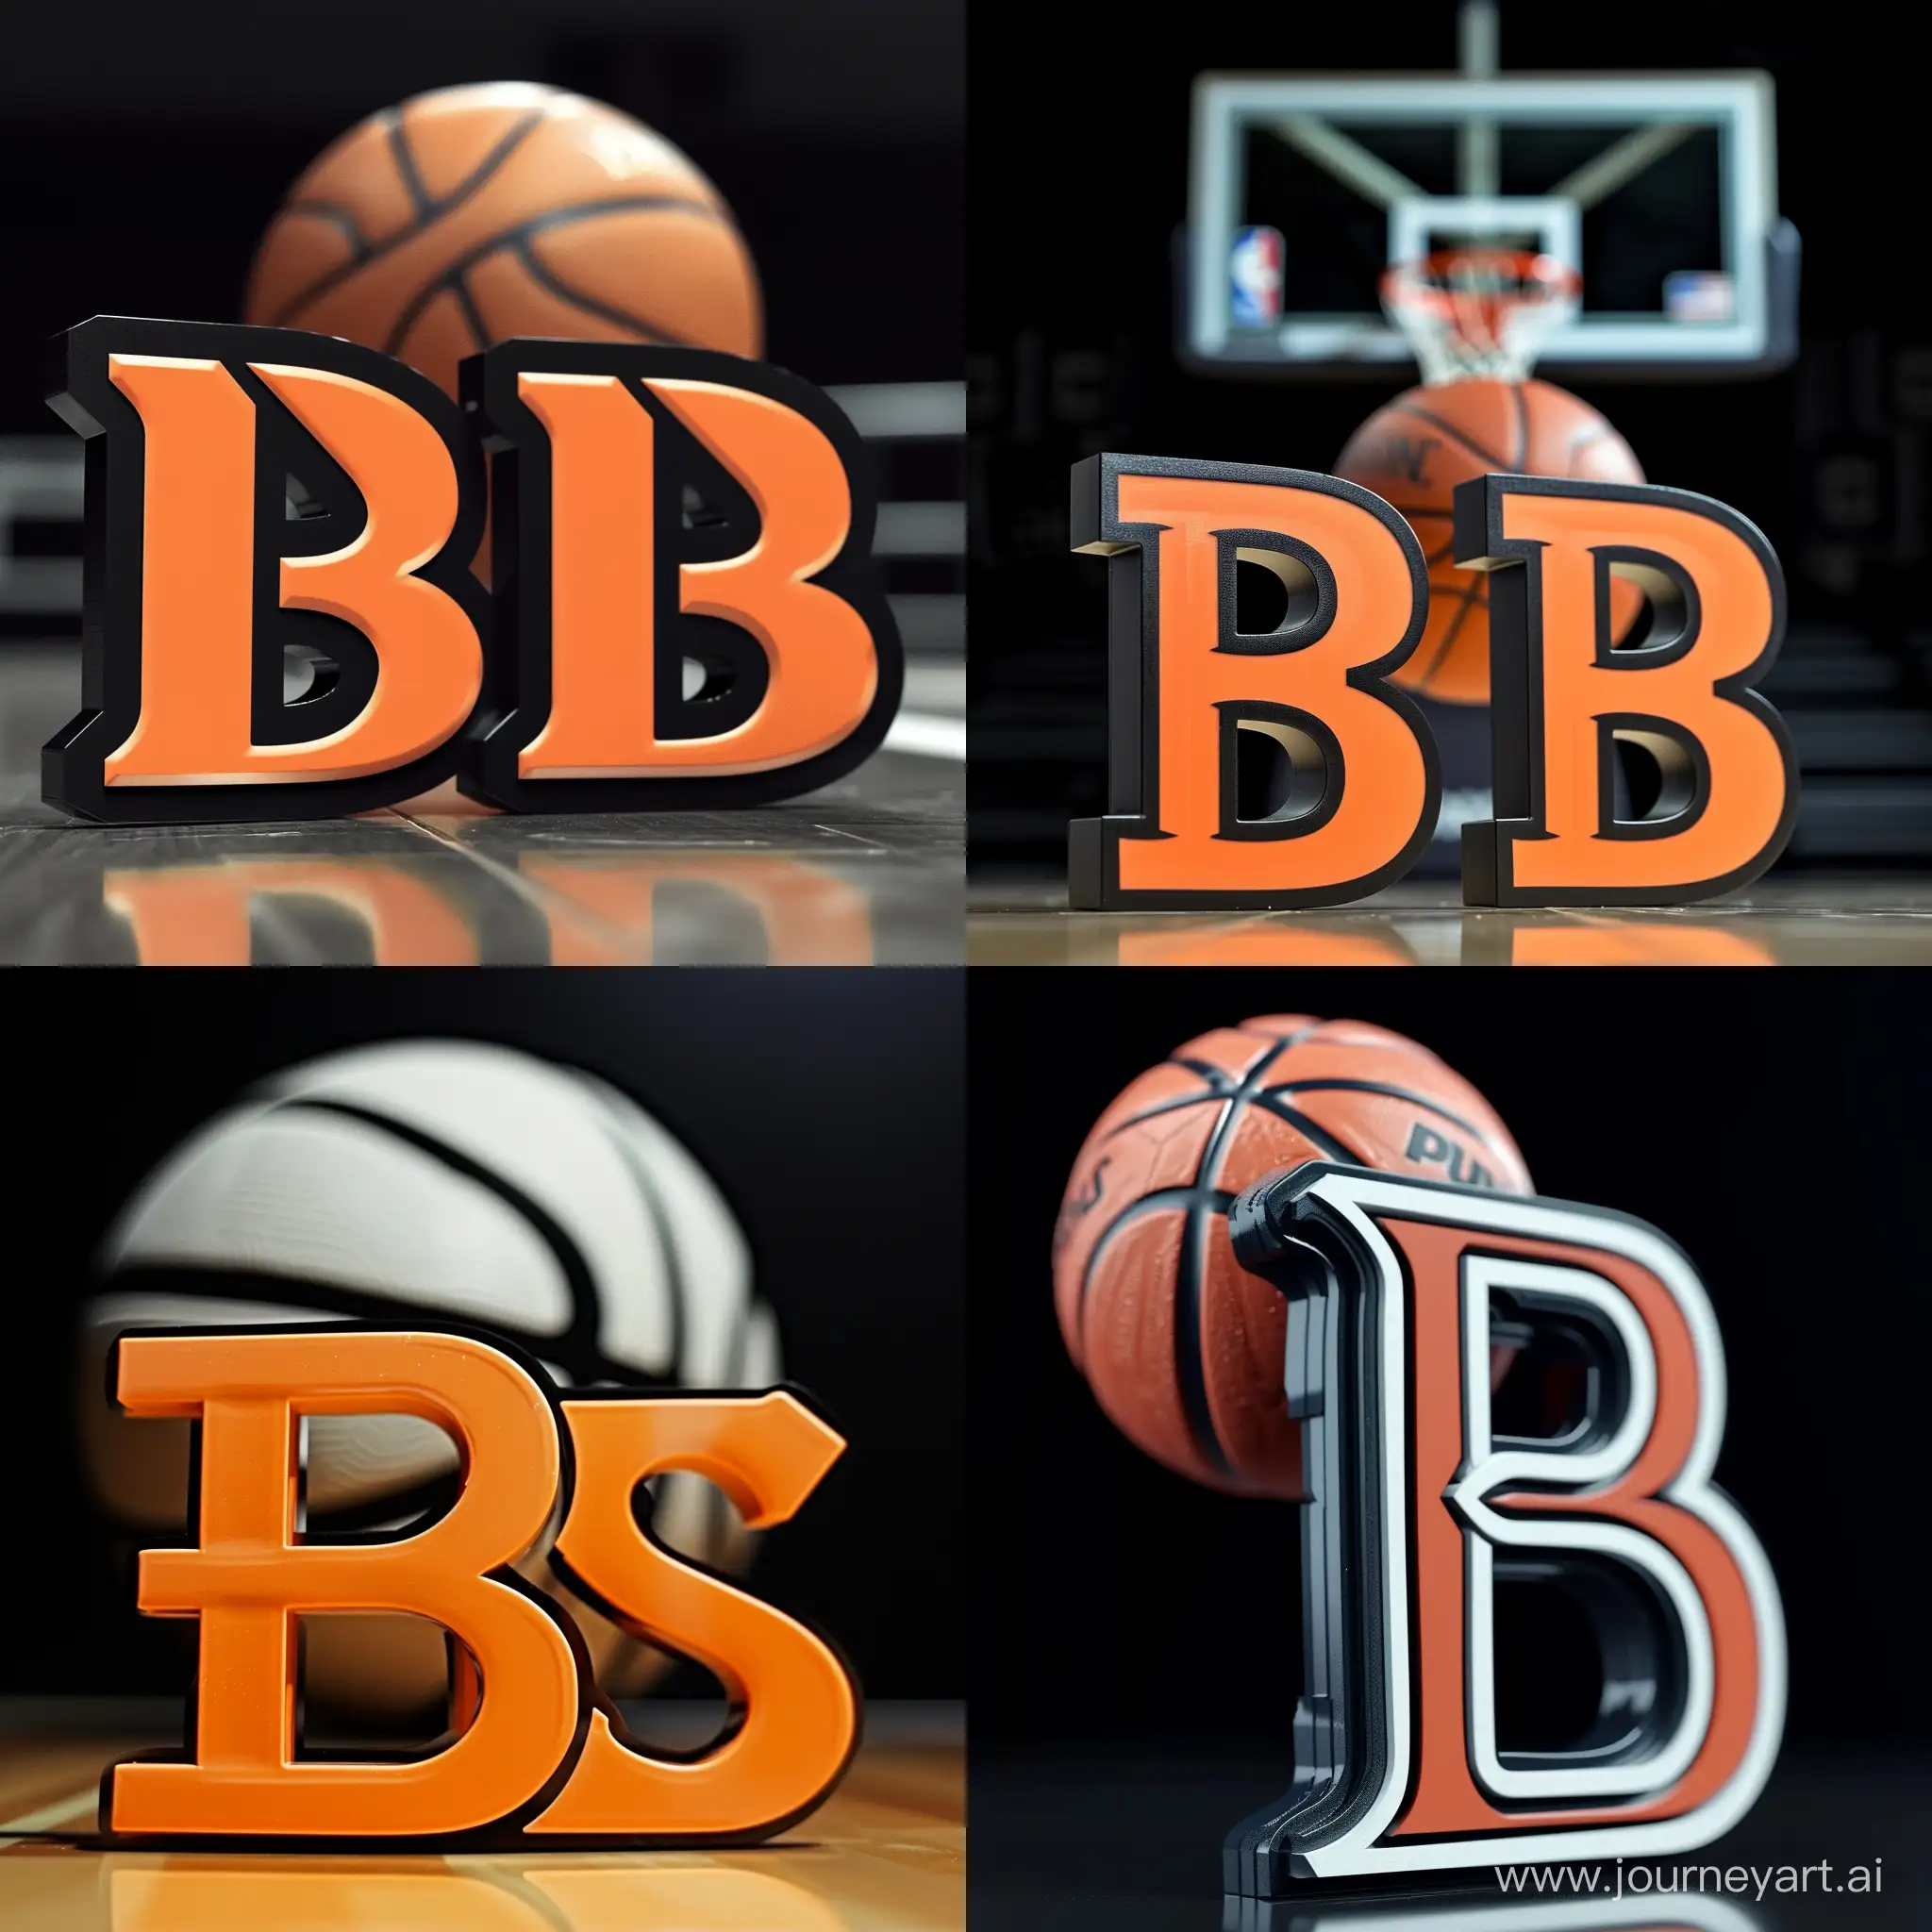 Пожалуйста, создайте логотип с двумя буквами B на переднем плане и баскетбольным мячом позади них